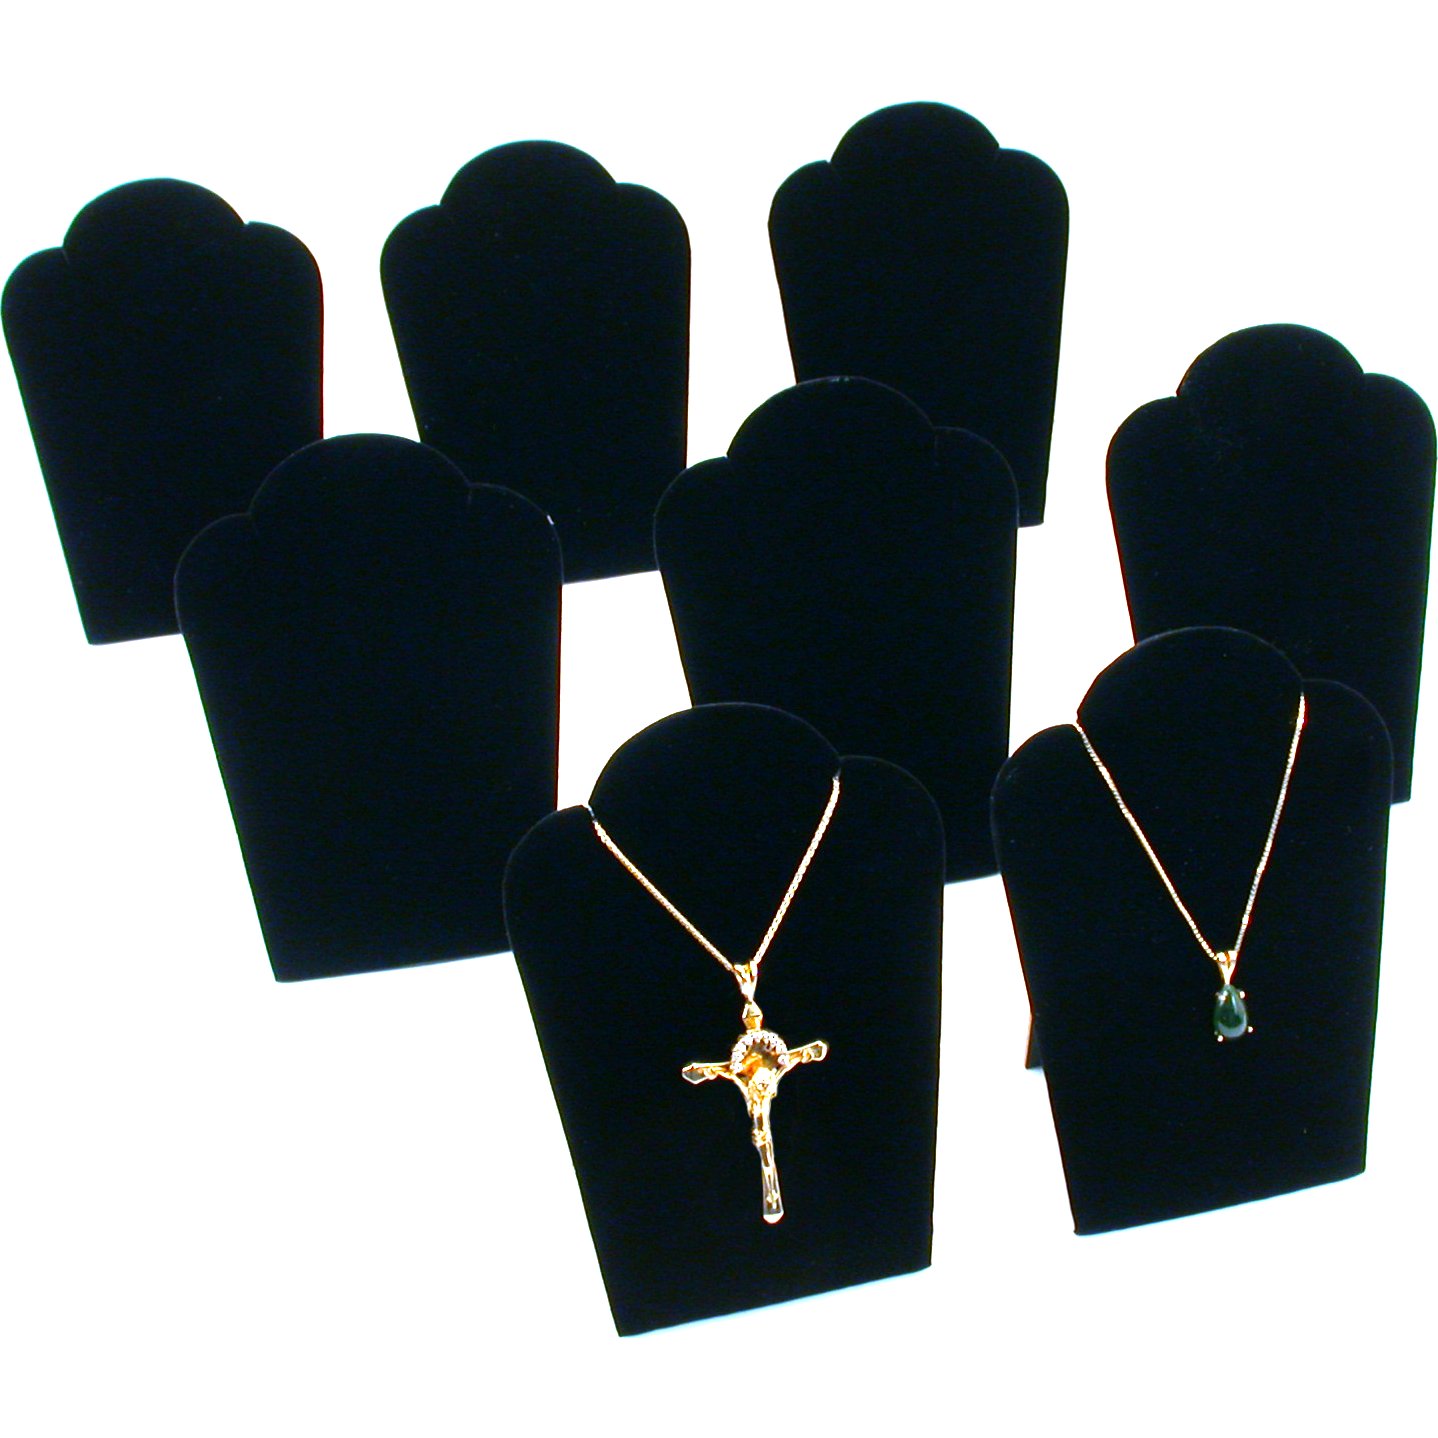 8Pc Necklace Chain Display Pendant Black Velvet Jewelry Set 3 3/4&#x22; x 5 1/4&#x22;